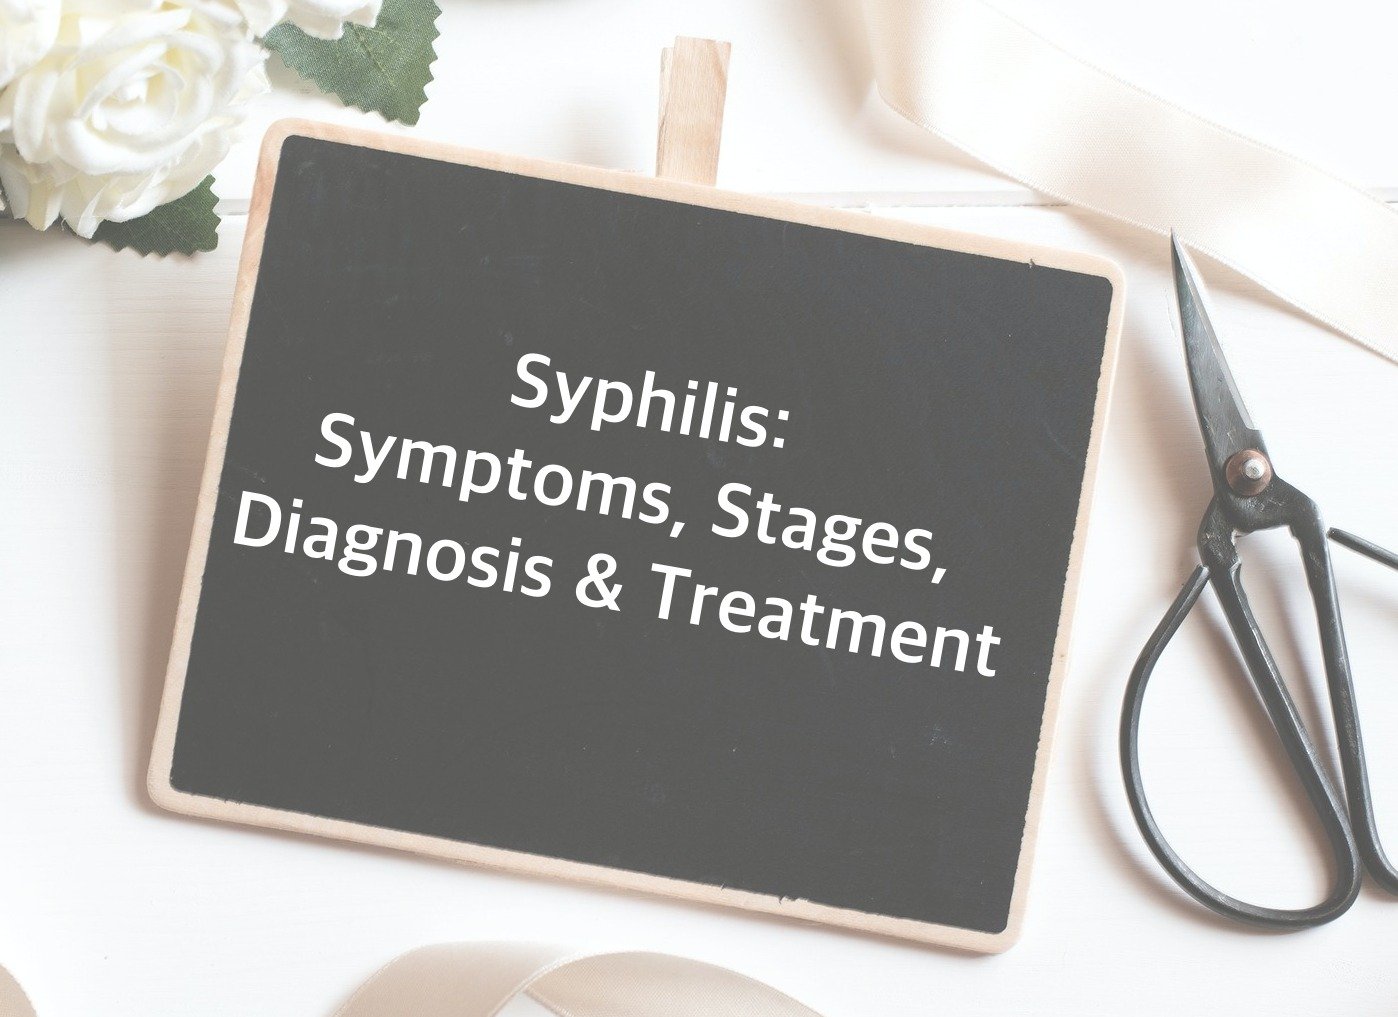 Syphilis: Symptoms, Stages, Diagnosis & Treatment